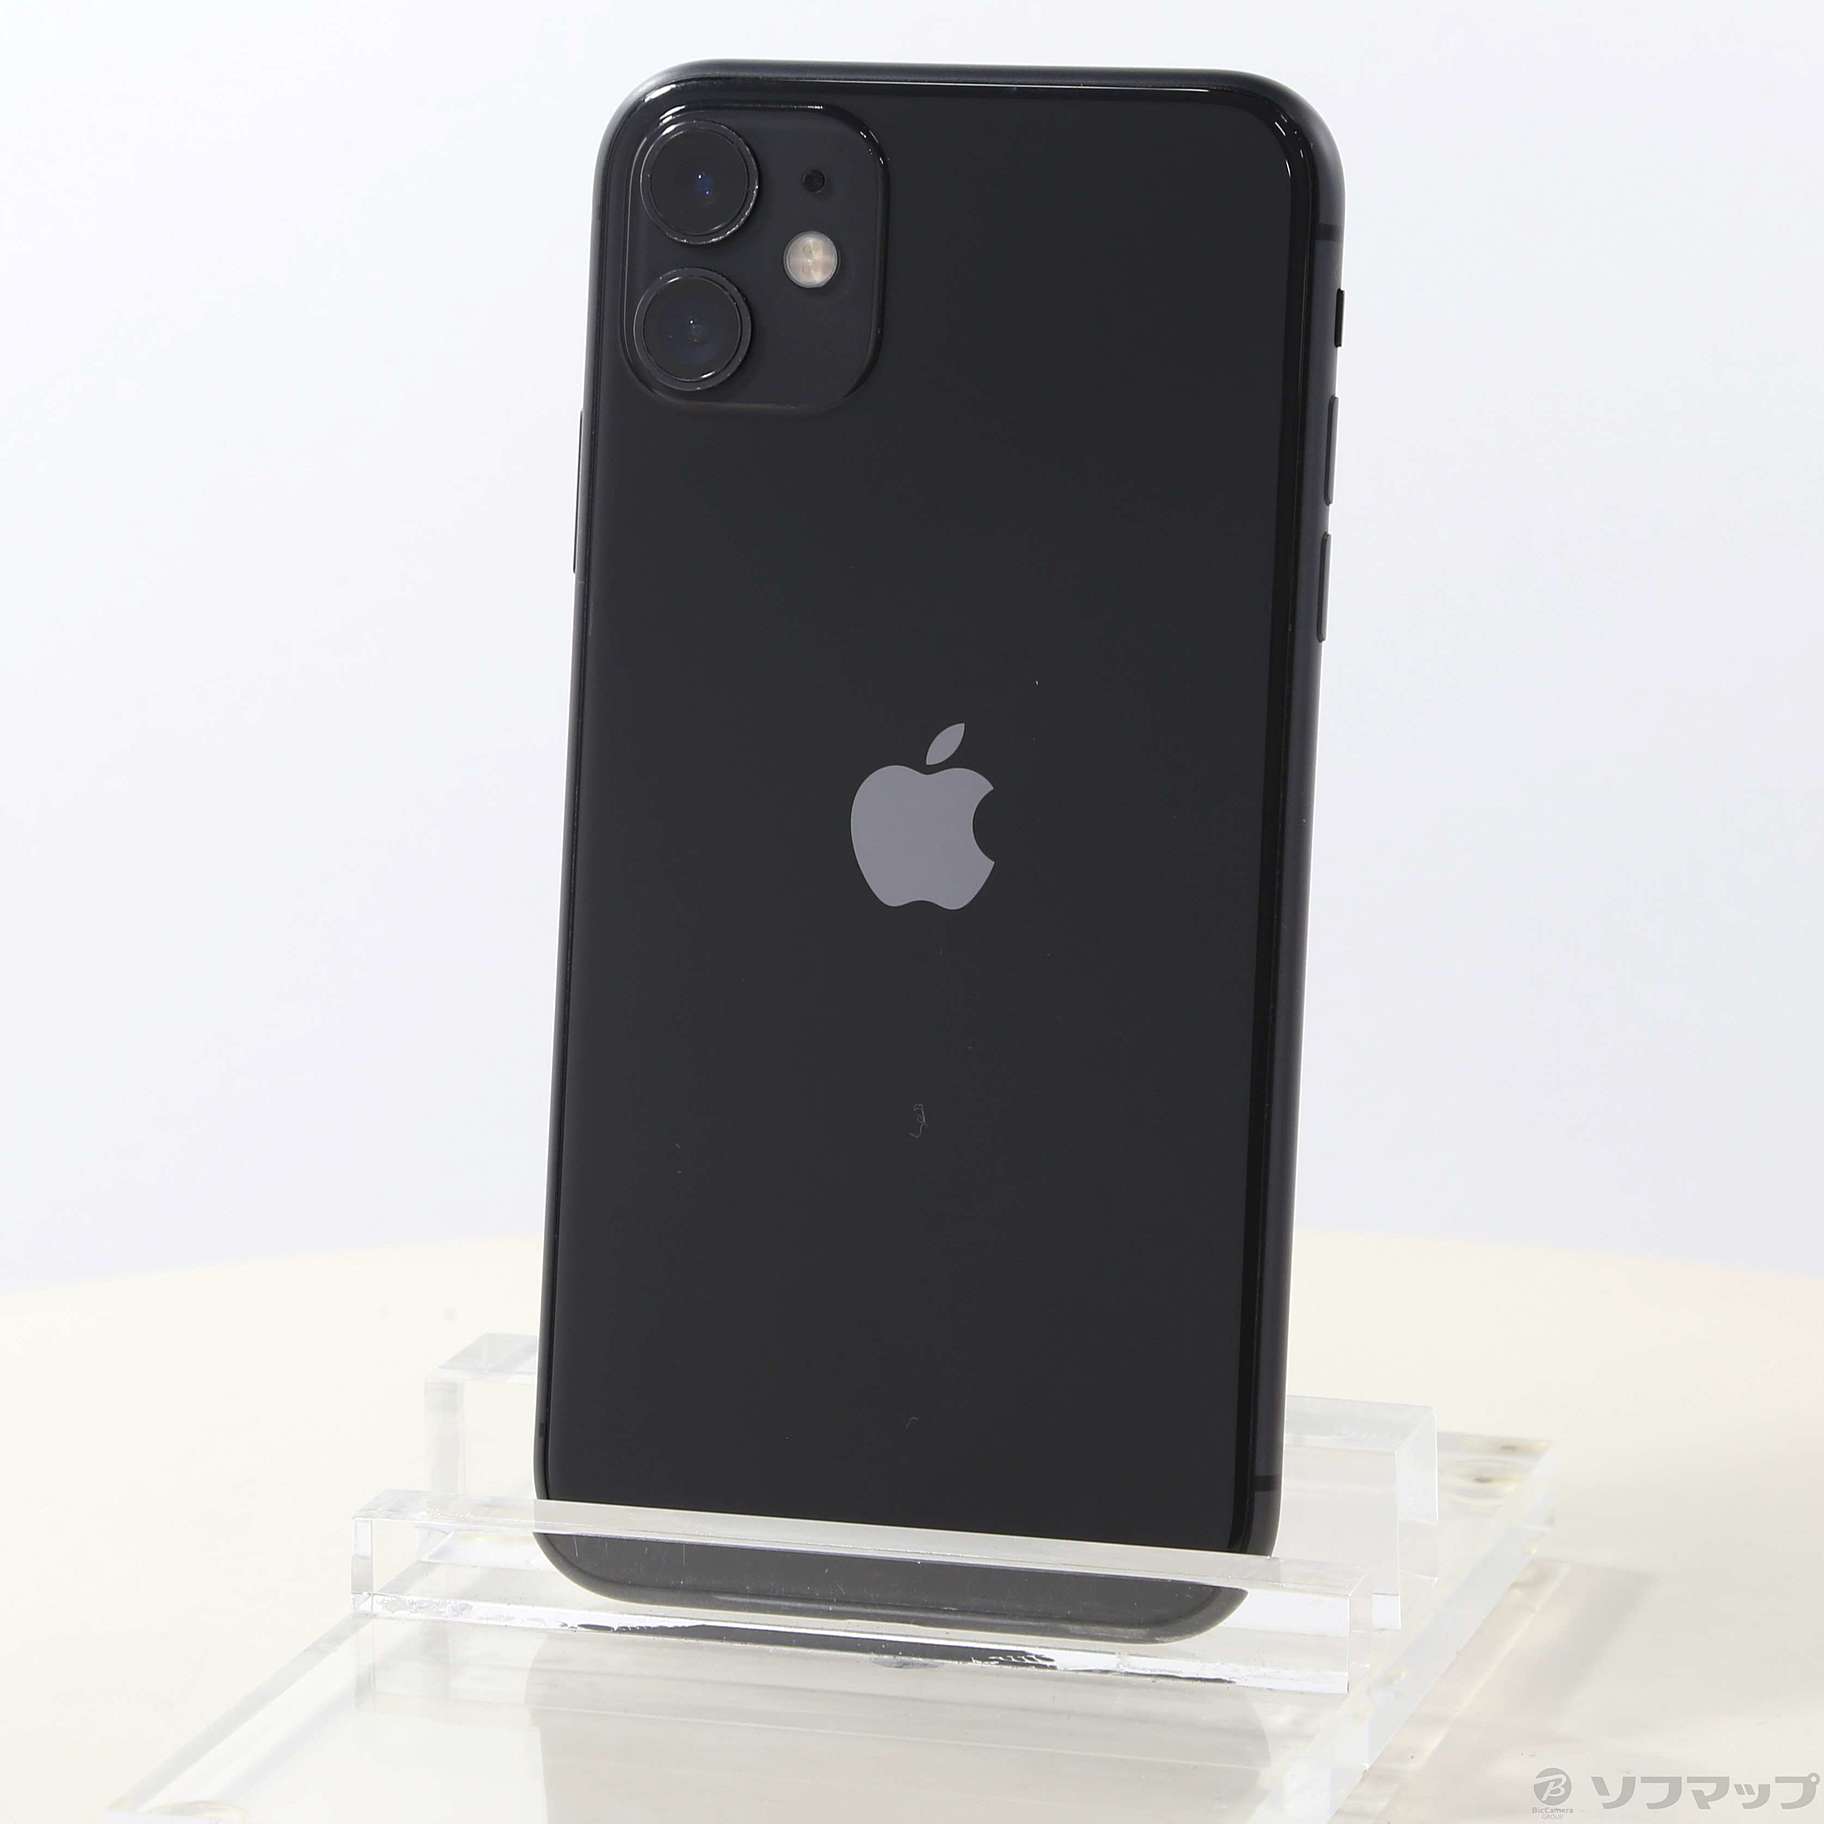 iPhone11黒 MWM 02J A 国内版SIMフリー - 携帯電話